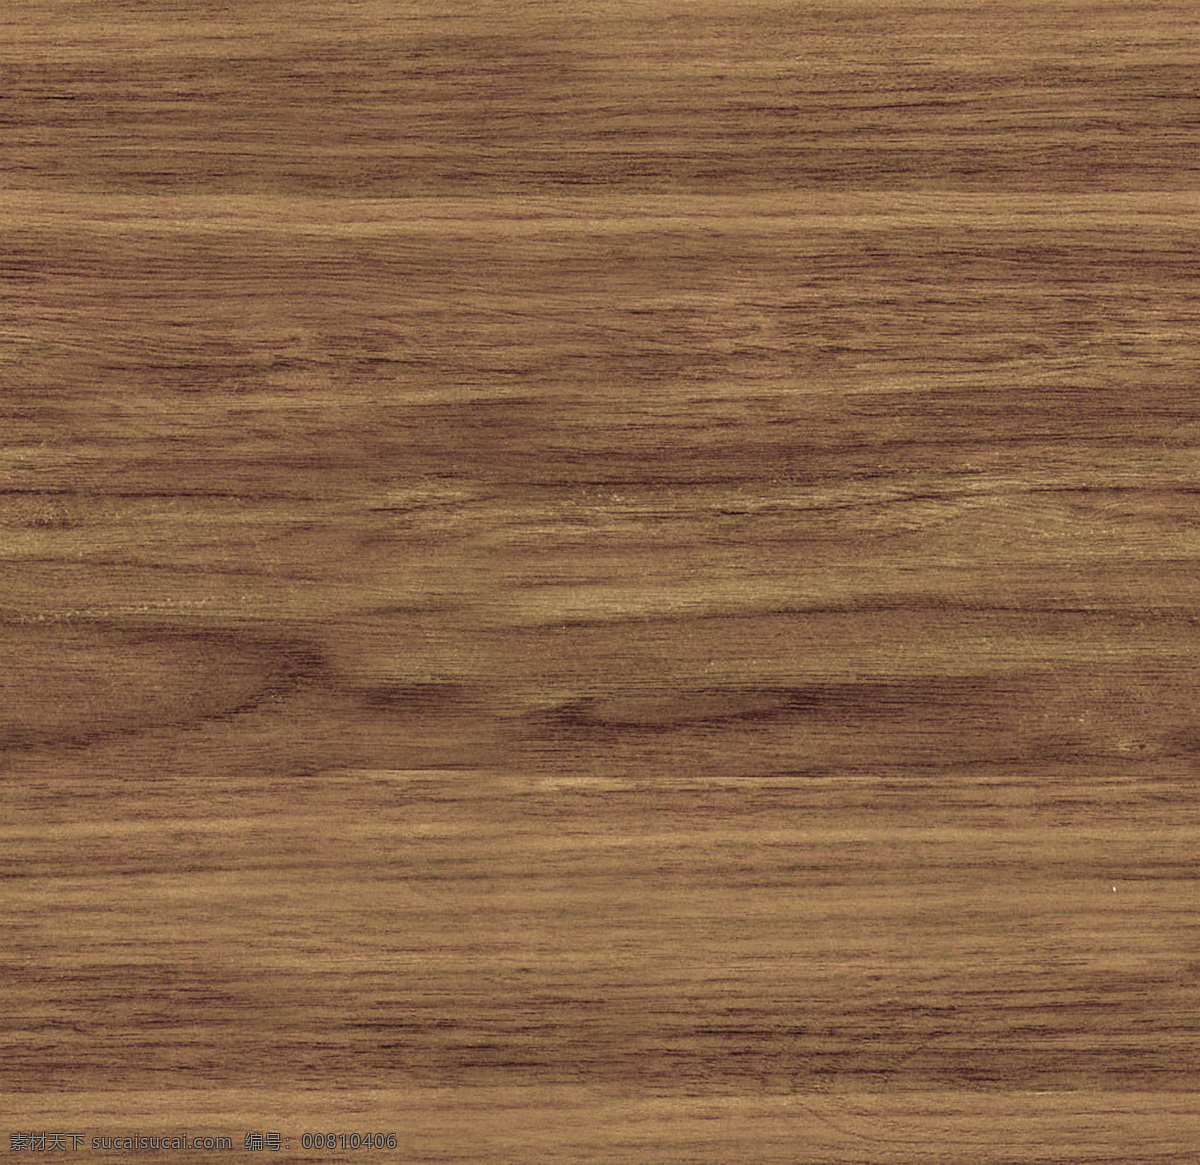 木头材质贴图 3d贴图 3dmax 贴图 模型贴图 木材材质贴图 艺术纹理 高清纹理 室内 室外景观贴图 文件 3d设计 3d作品